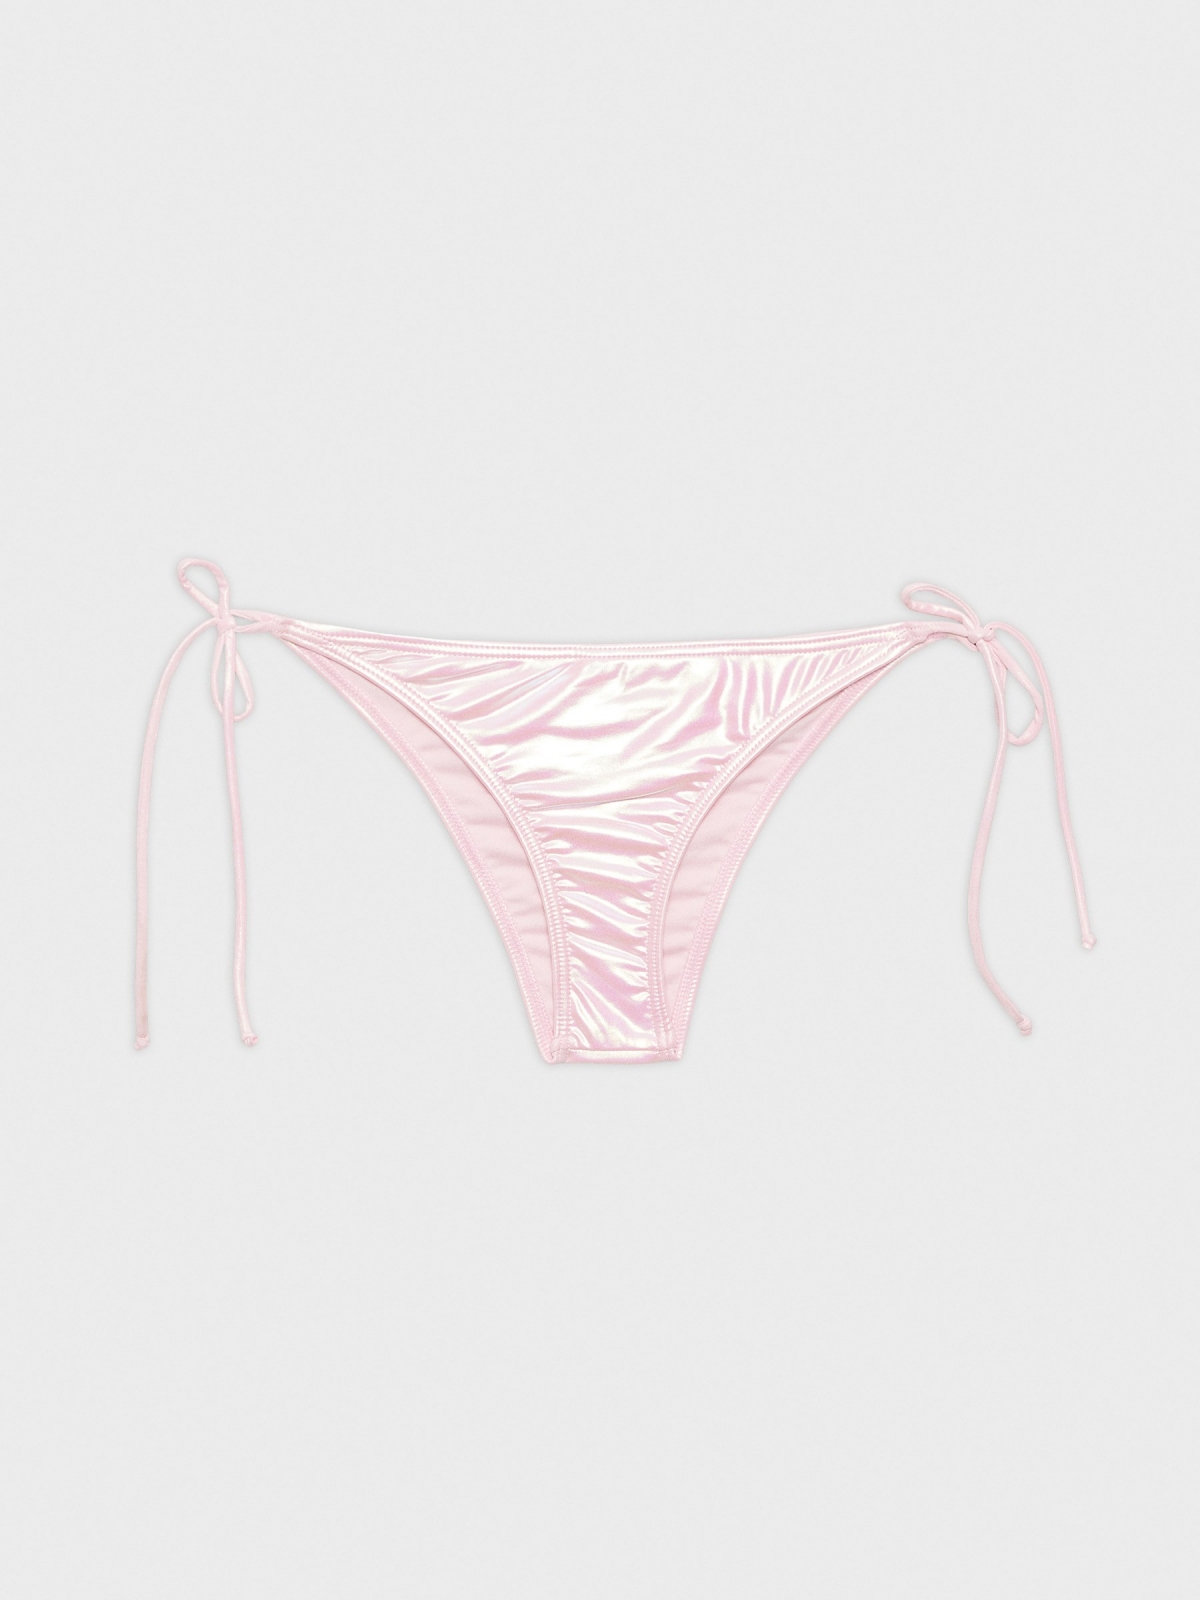  Knotted bikini knickers pink